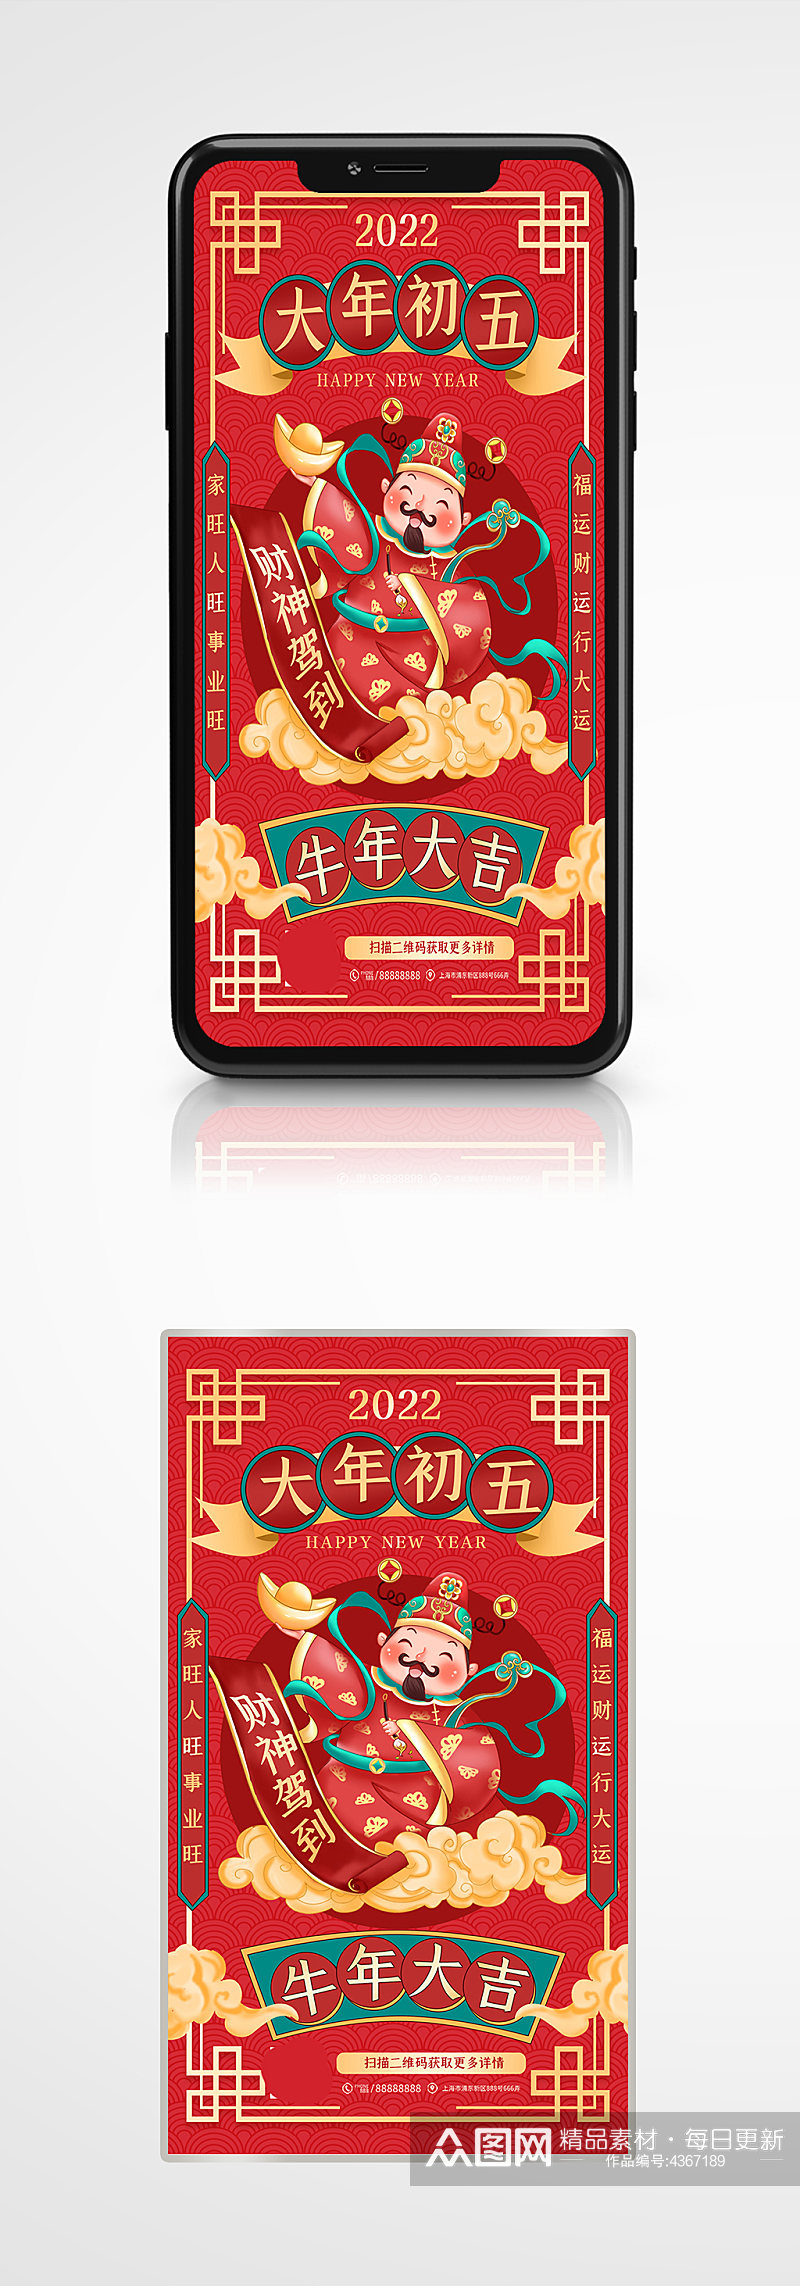 大年初五迎财神春节习俗手机海报插画素材